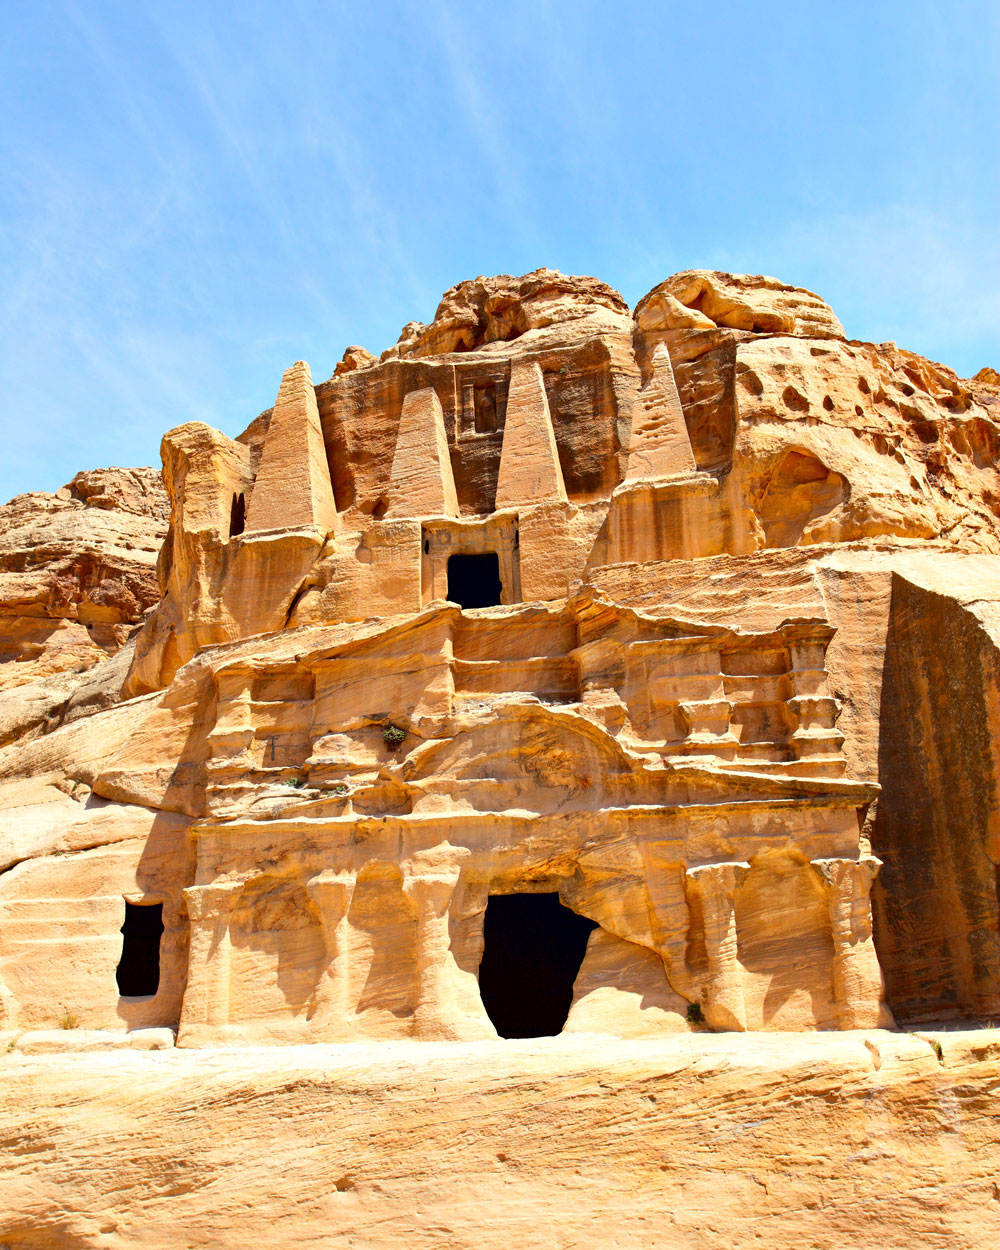 Petra, Jordan - Travel